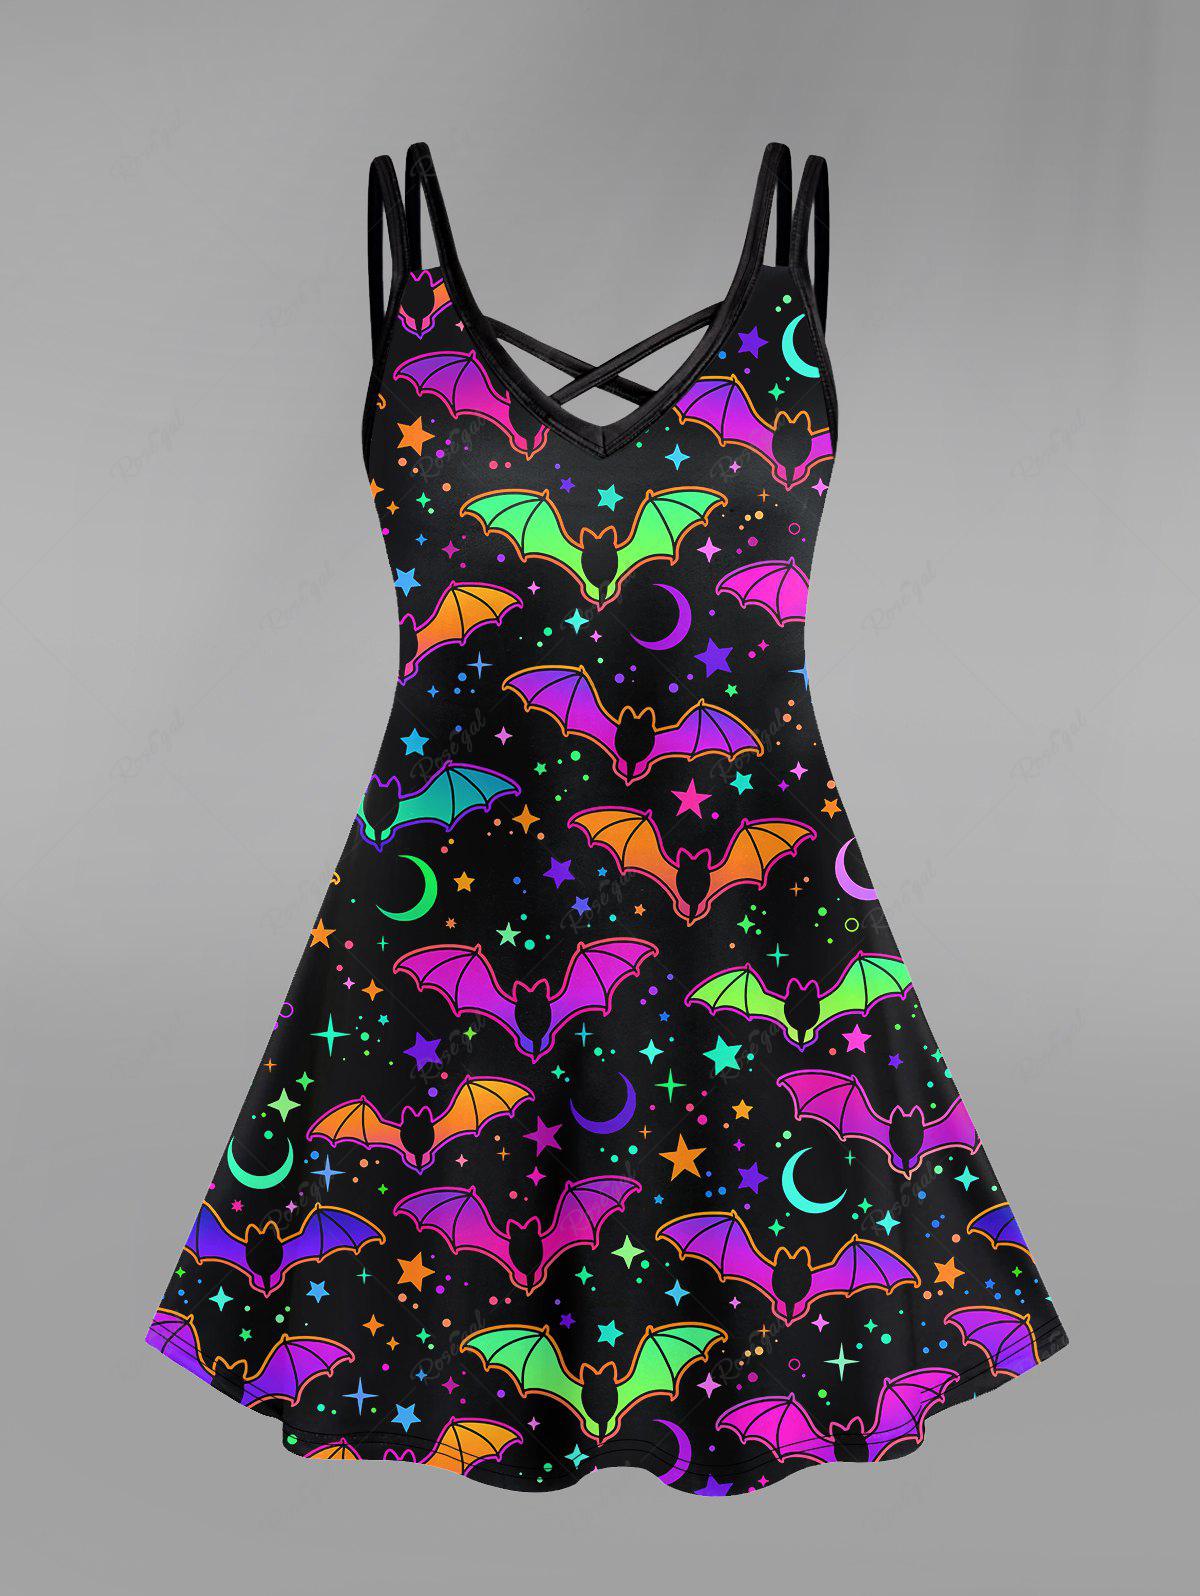 💗LAUREN LOVES💗 Halloween Costume Gothic Cute Bat Star Moon Print Crisscross Halloween Cami Dress